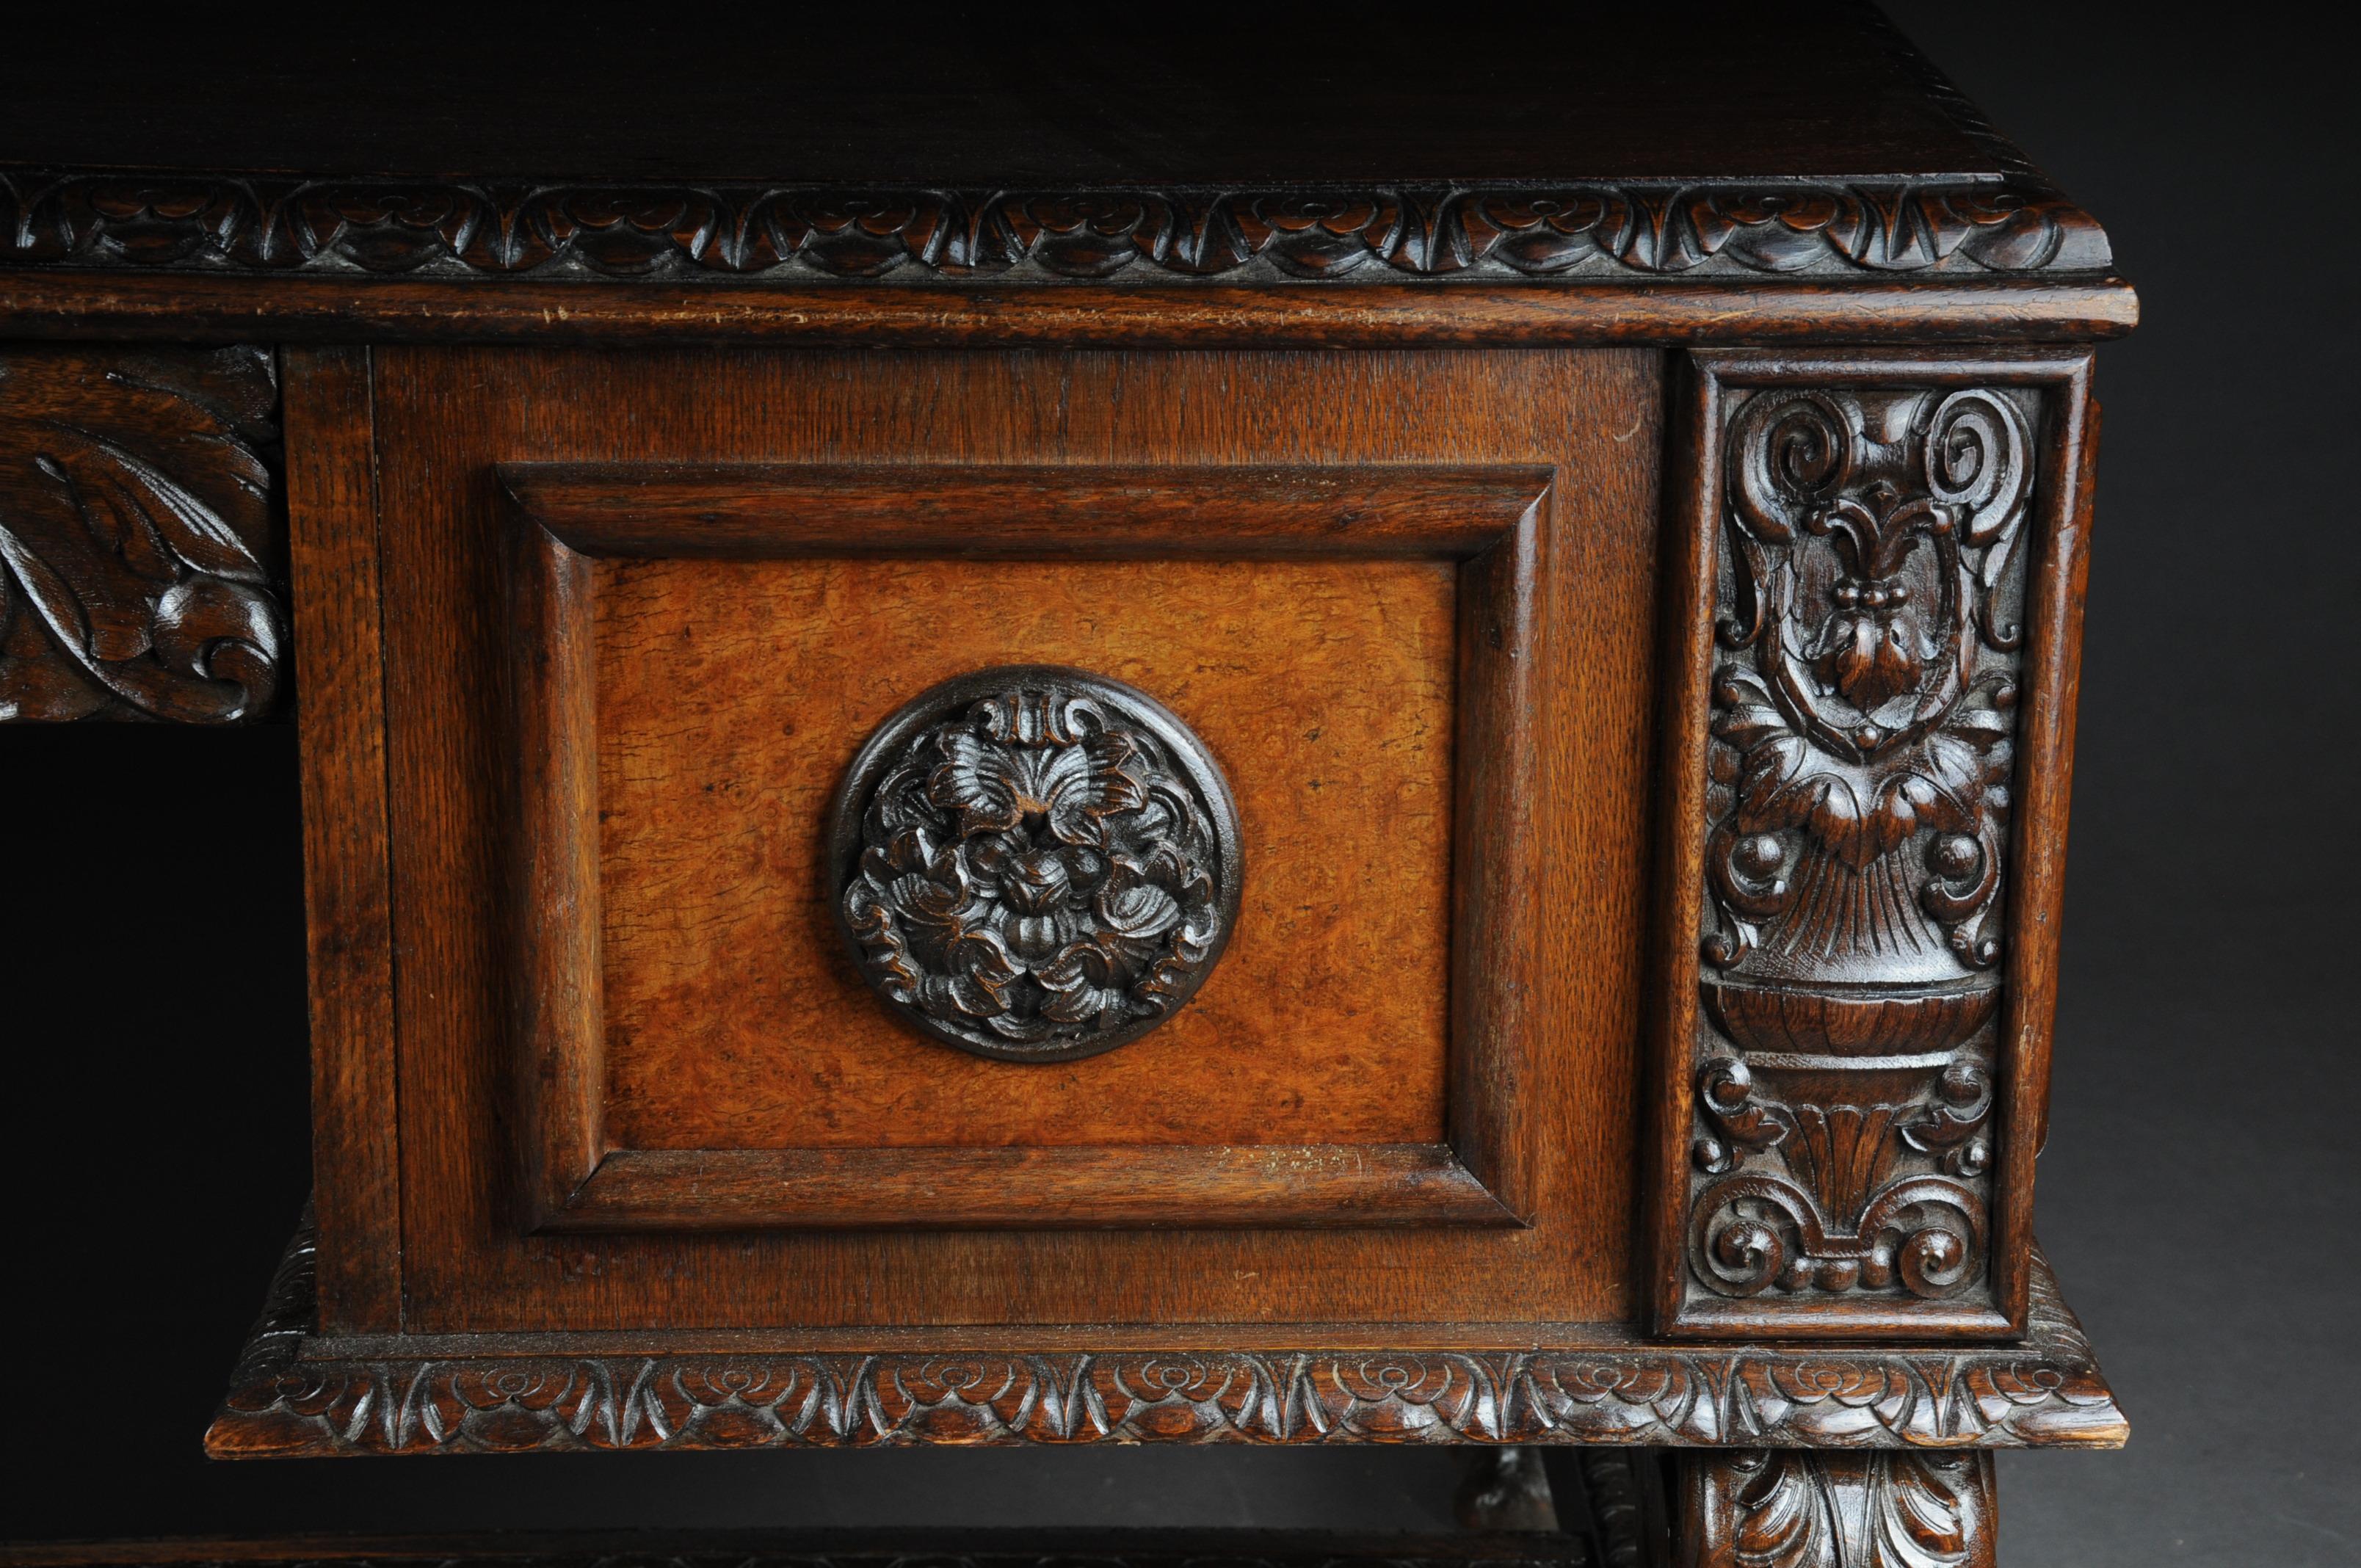 herrschaftlicher Neo Renaisansce Schreibtisch Eiche massiv

Meisterhafter Eichenschreibtisch. Massive Eiche geschnitzt und teilweise nussbaumfurniert. Leicht vorstehende Abdeckplatte. Schreibtisch, der auf pfotenförmigen Füßen steht und mit einer